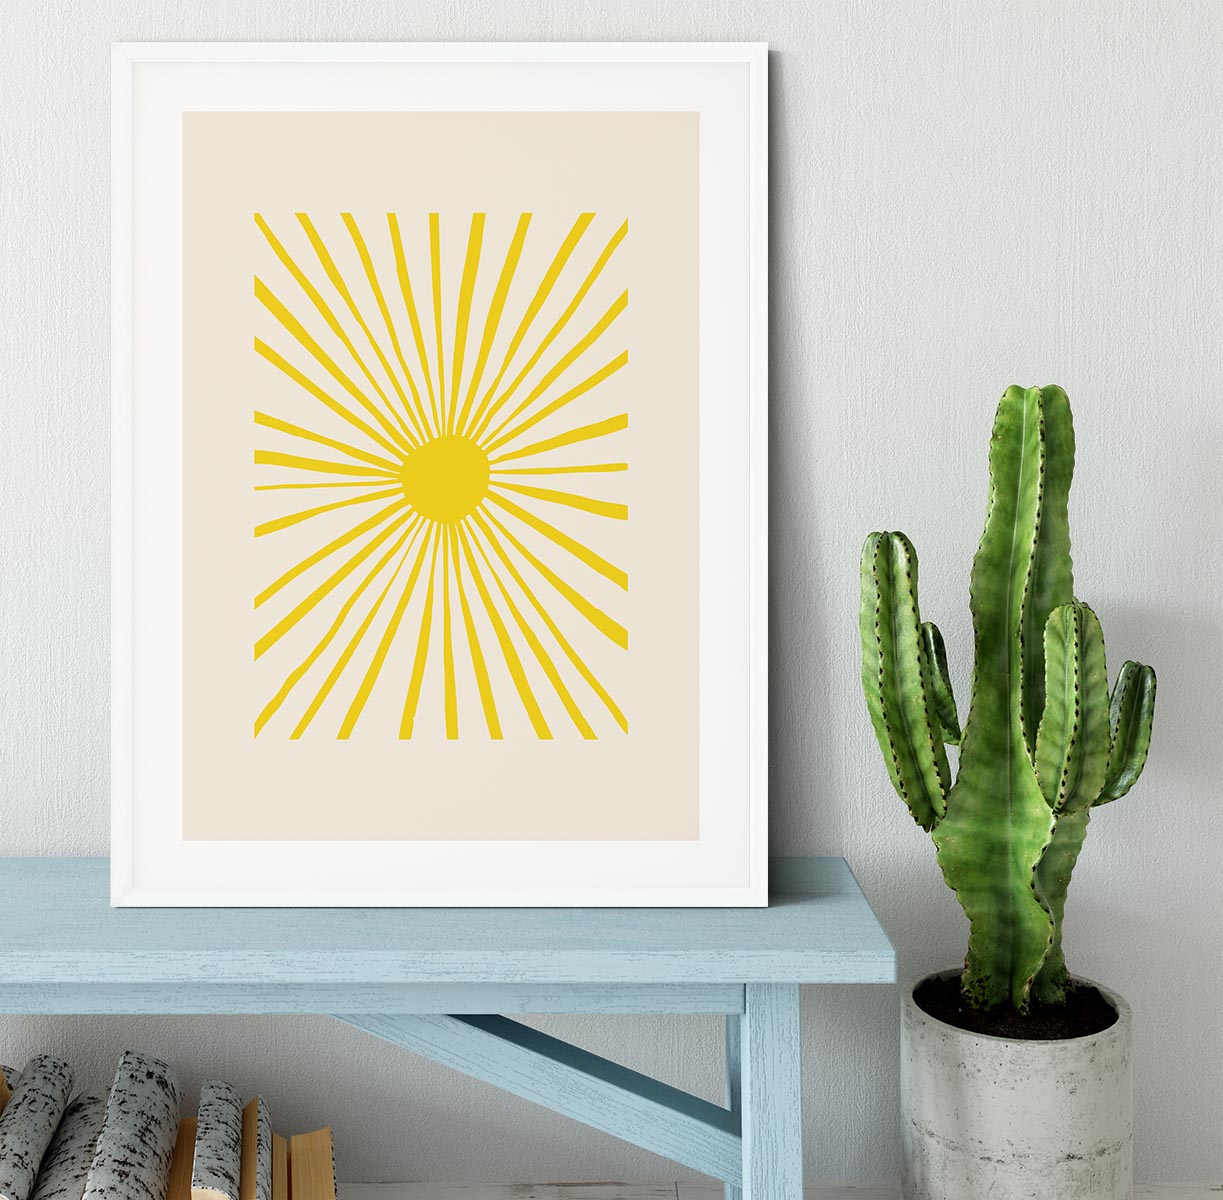 The Sun Framed Print - Canvas Art Rocks - 5